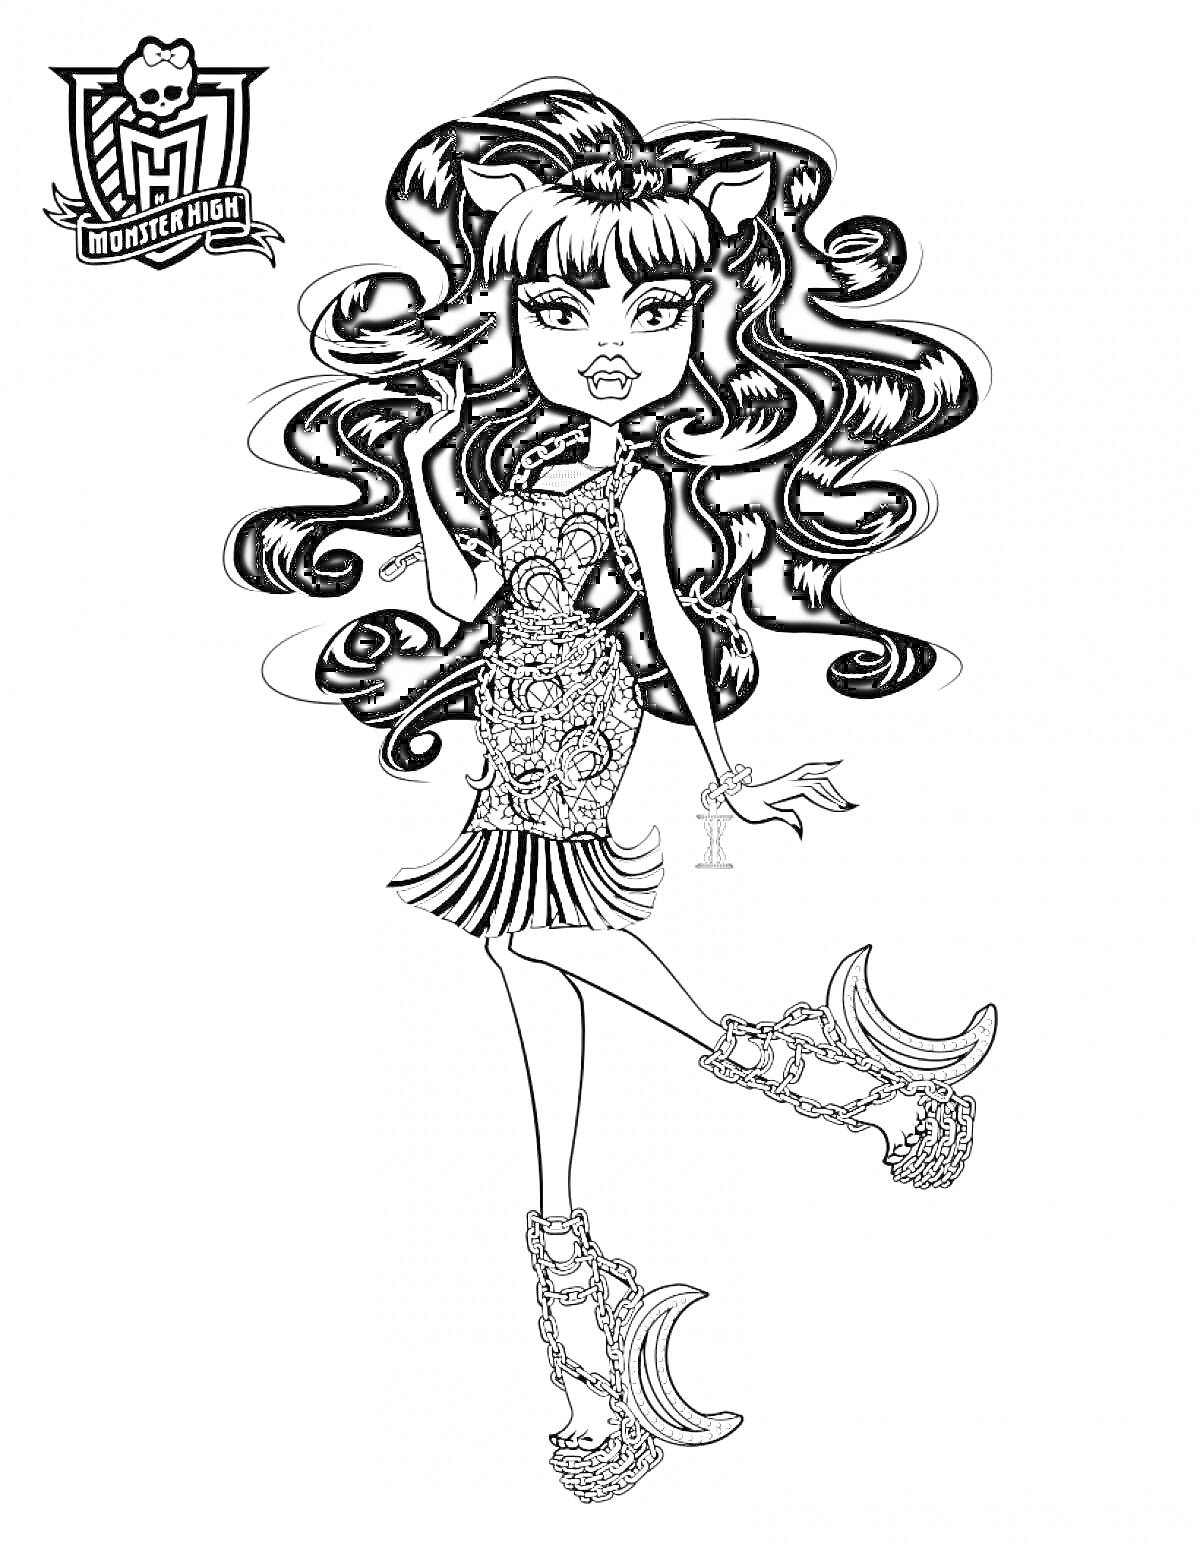 Раскраска Персонаж Монстер Хай с длинными волнистыми волосами, в коротком платье, с поднятой ногой, с логотипом Монстер Хай